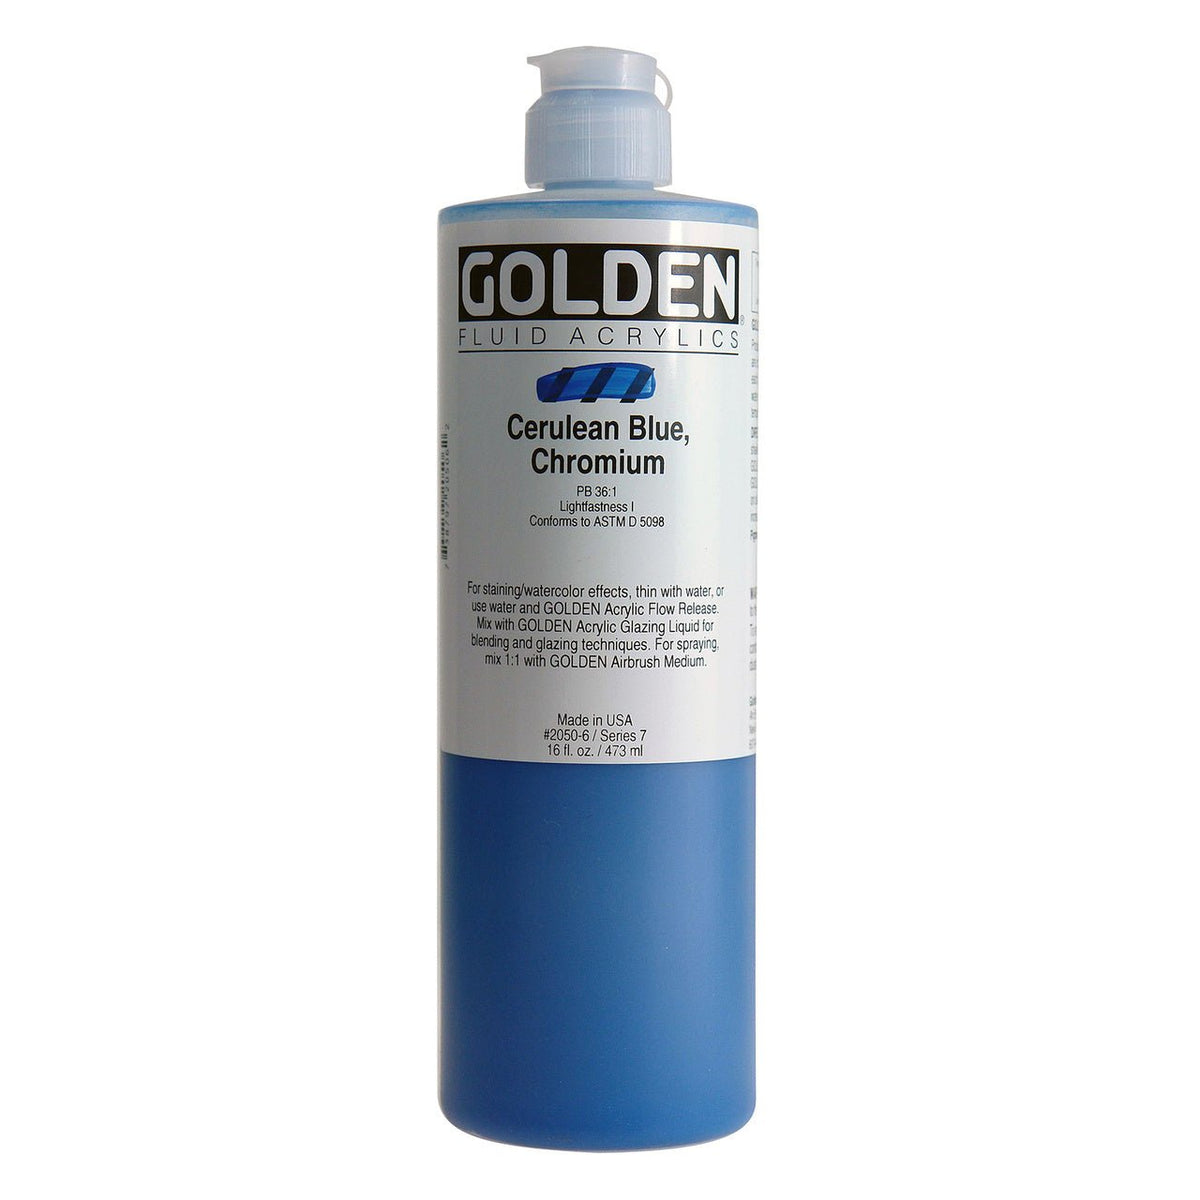 Golden Fluid Acrylic Cerulean Blue Chromium 16 oz - merriartist.com